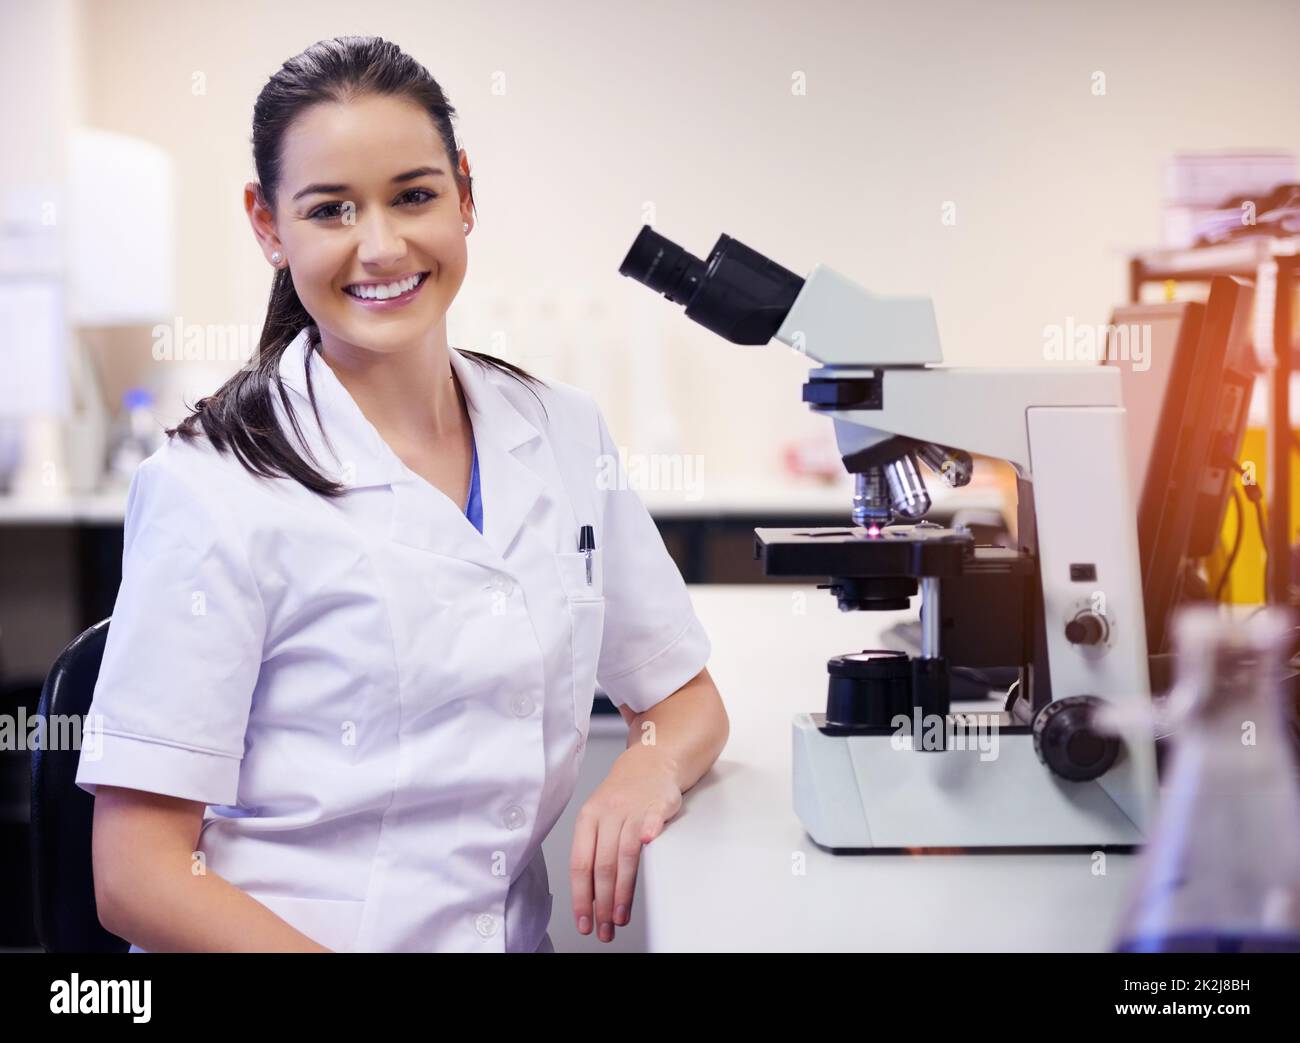 Spécialisée dans la recherche scientifique. Portrait d'un jeune scientifique confiant travaillant dans un laboratoire. Banque D'Images